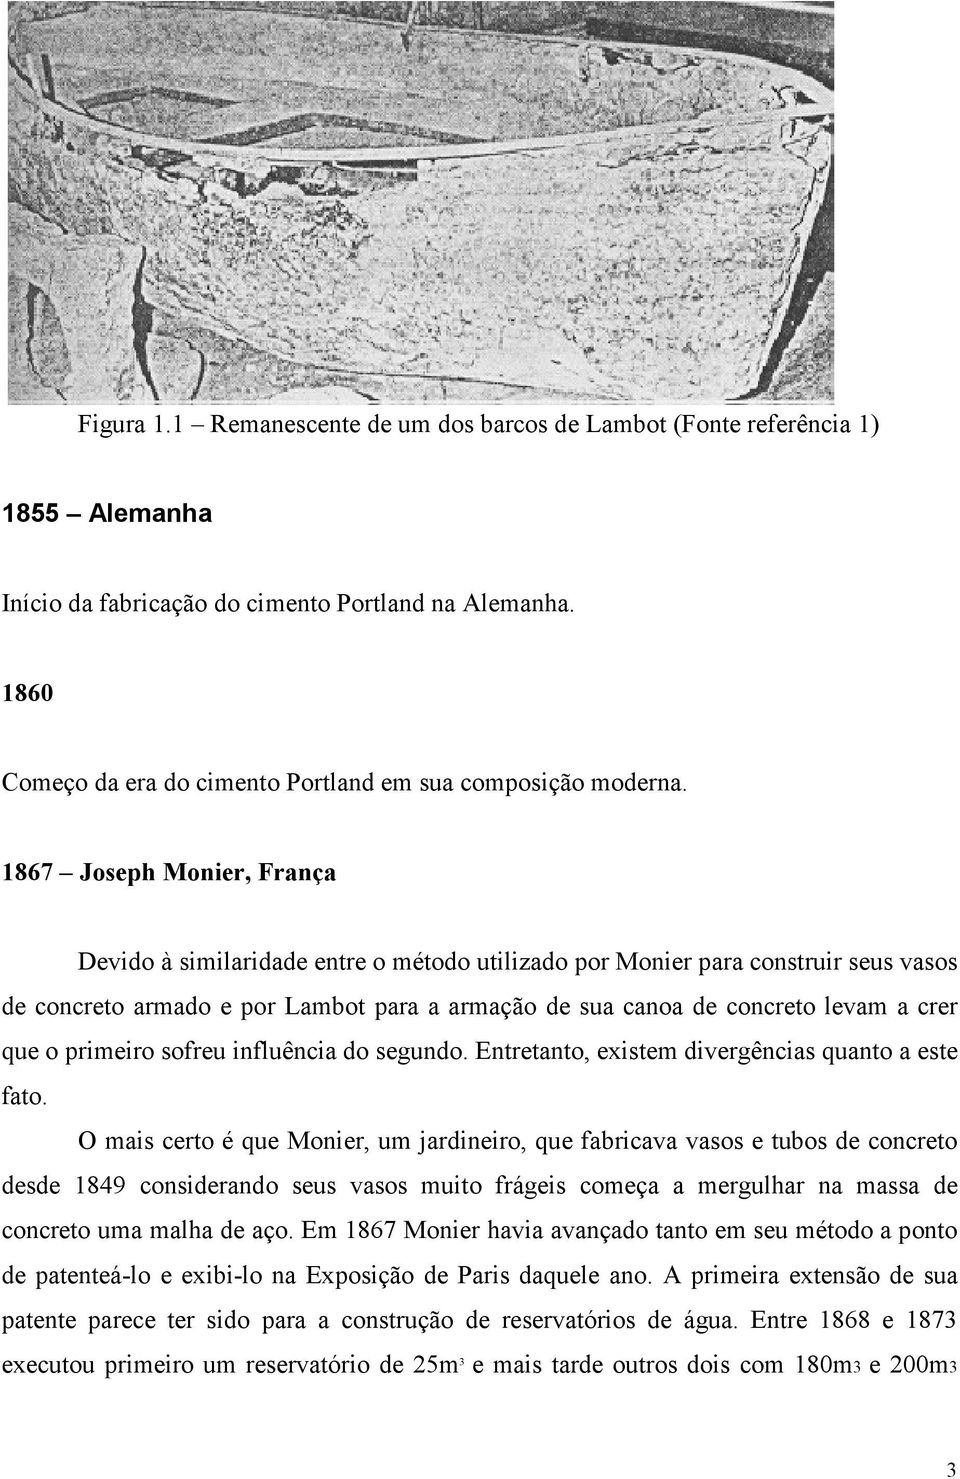 1867 Joseph Monier, França Devido à similaridade entre o método utilizado por Monier para construir seus vasos de concreto armado e por Lambot para a armação de sua canoa de concreto levam a crer que